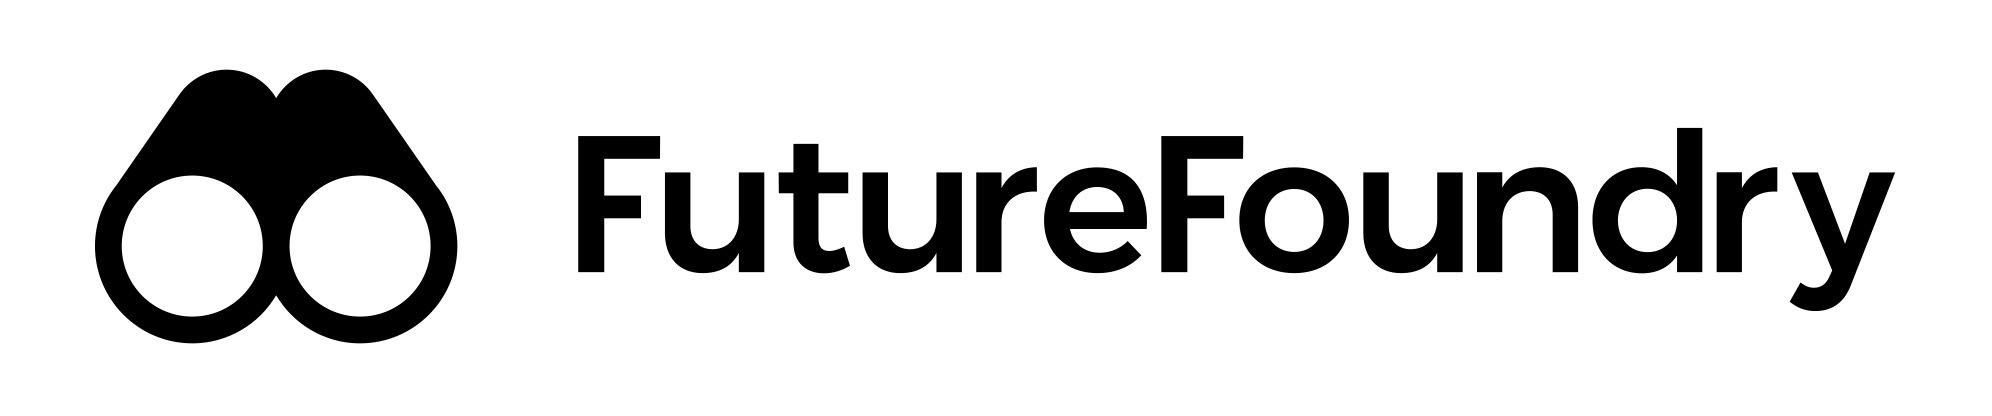 Future Foundry’s logo